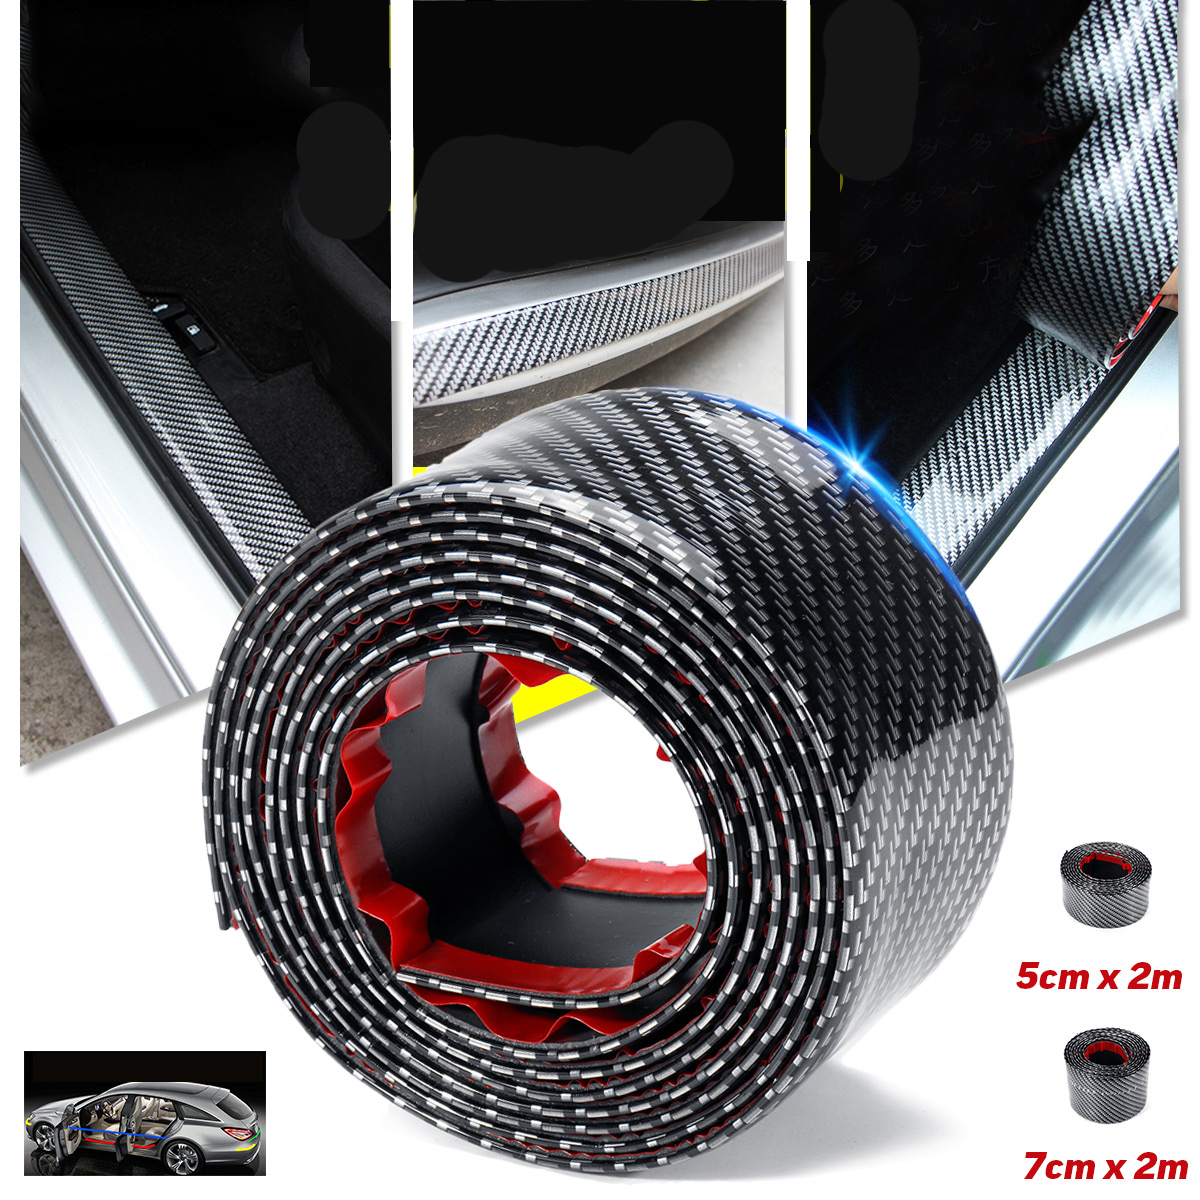 

7cm X 2m / 5cm X 2m Carbon Fiber Rubber Soft Black Bumper Strip